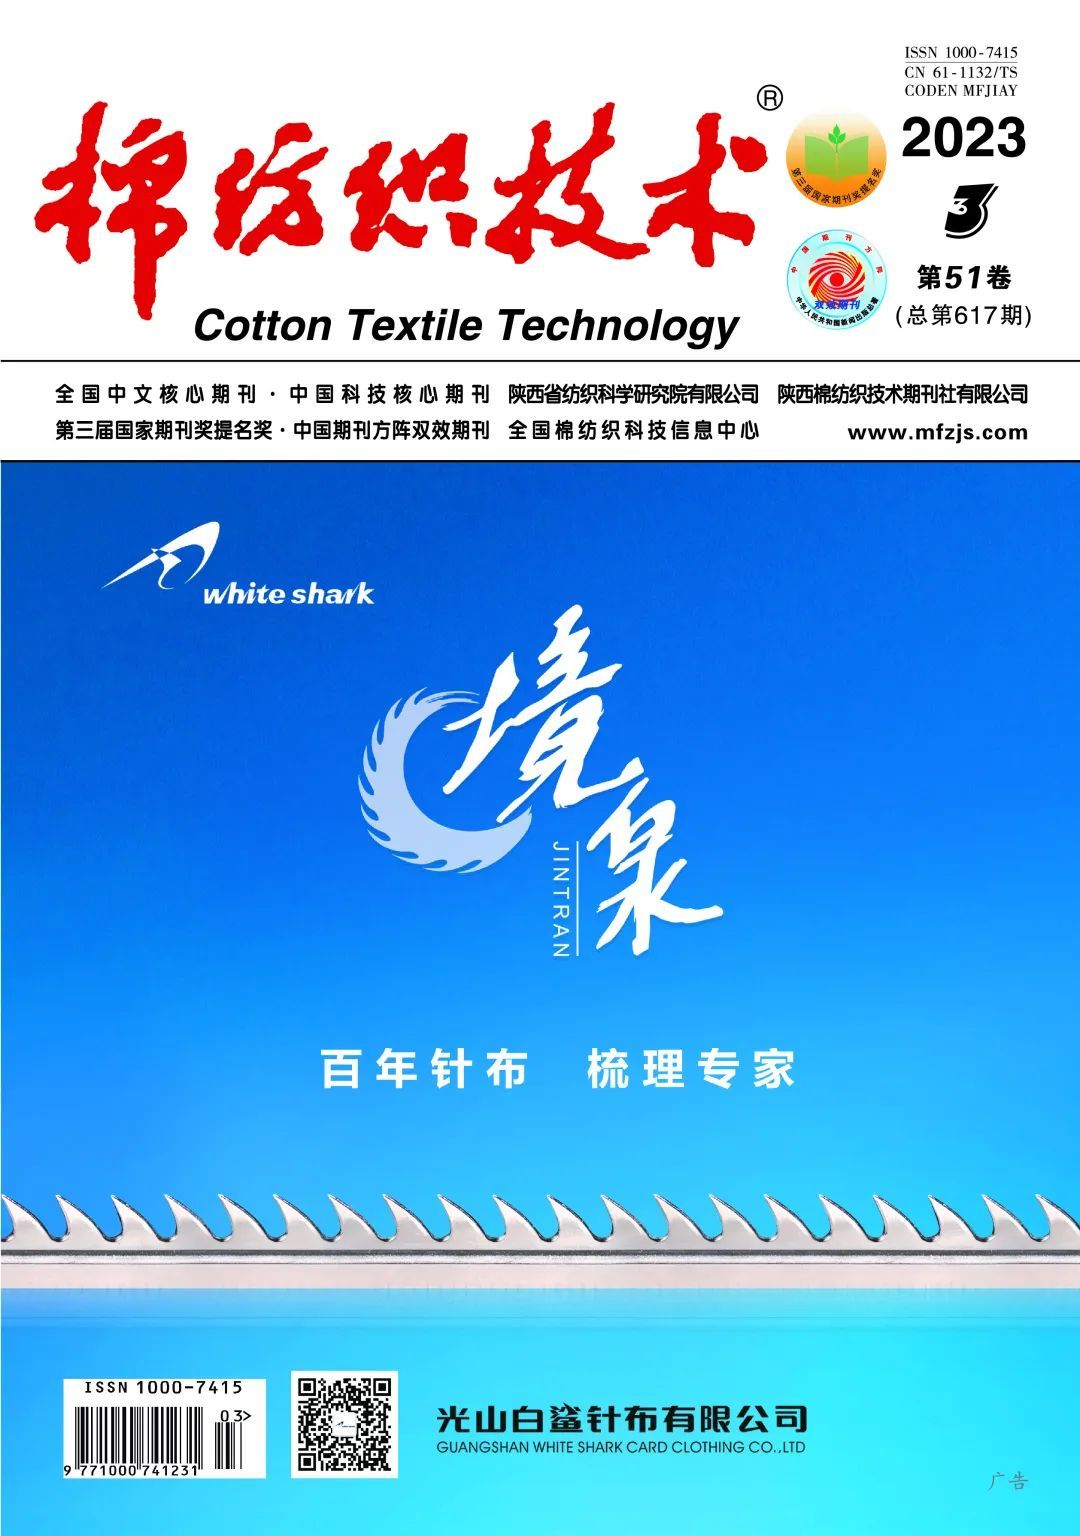 安然联合青岛大学在《棉纺织技术》发表学术论文